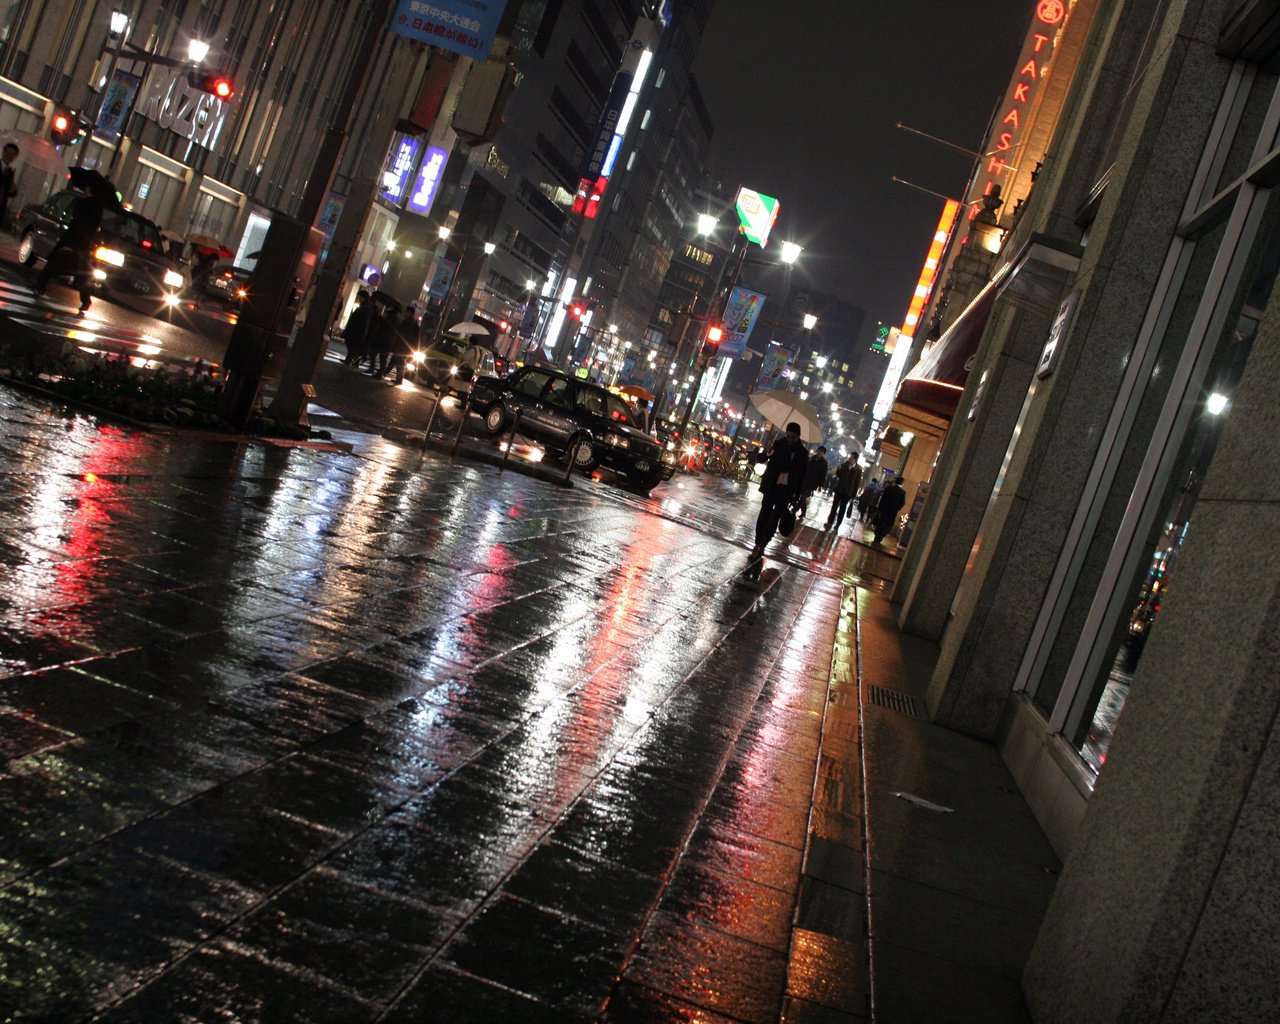 Ночной город после дождя